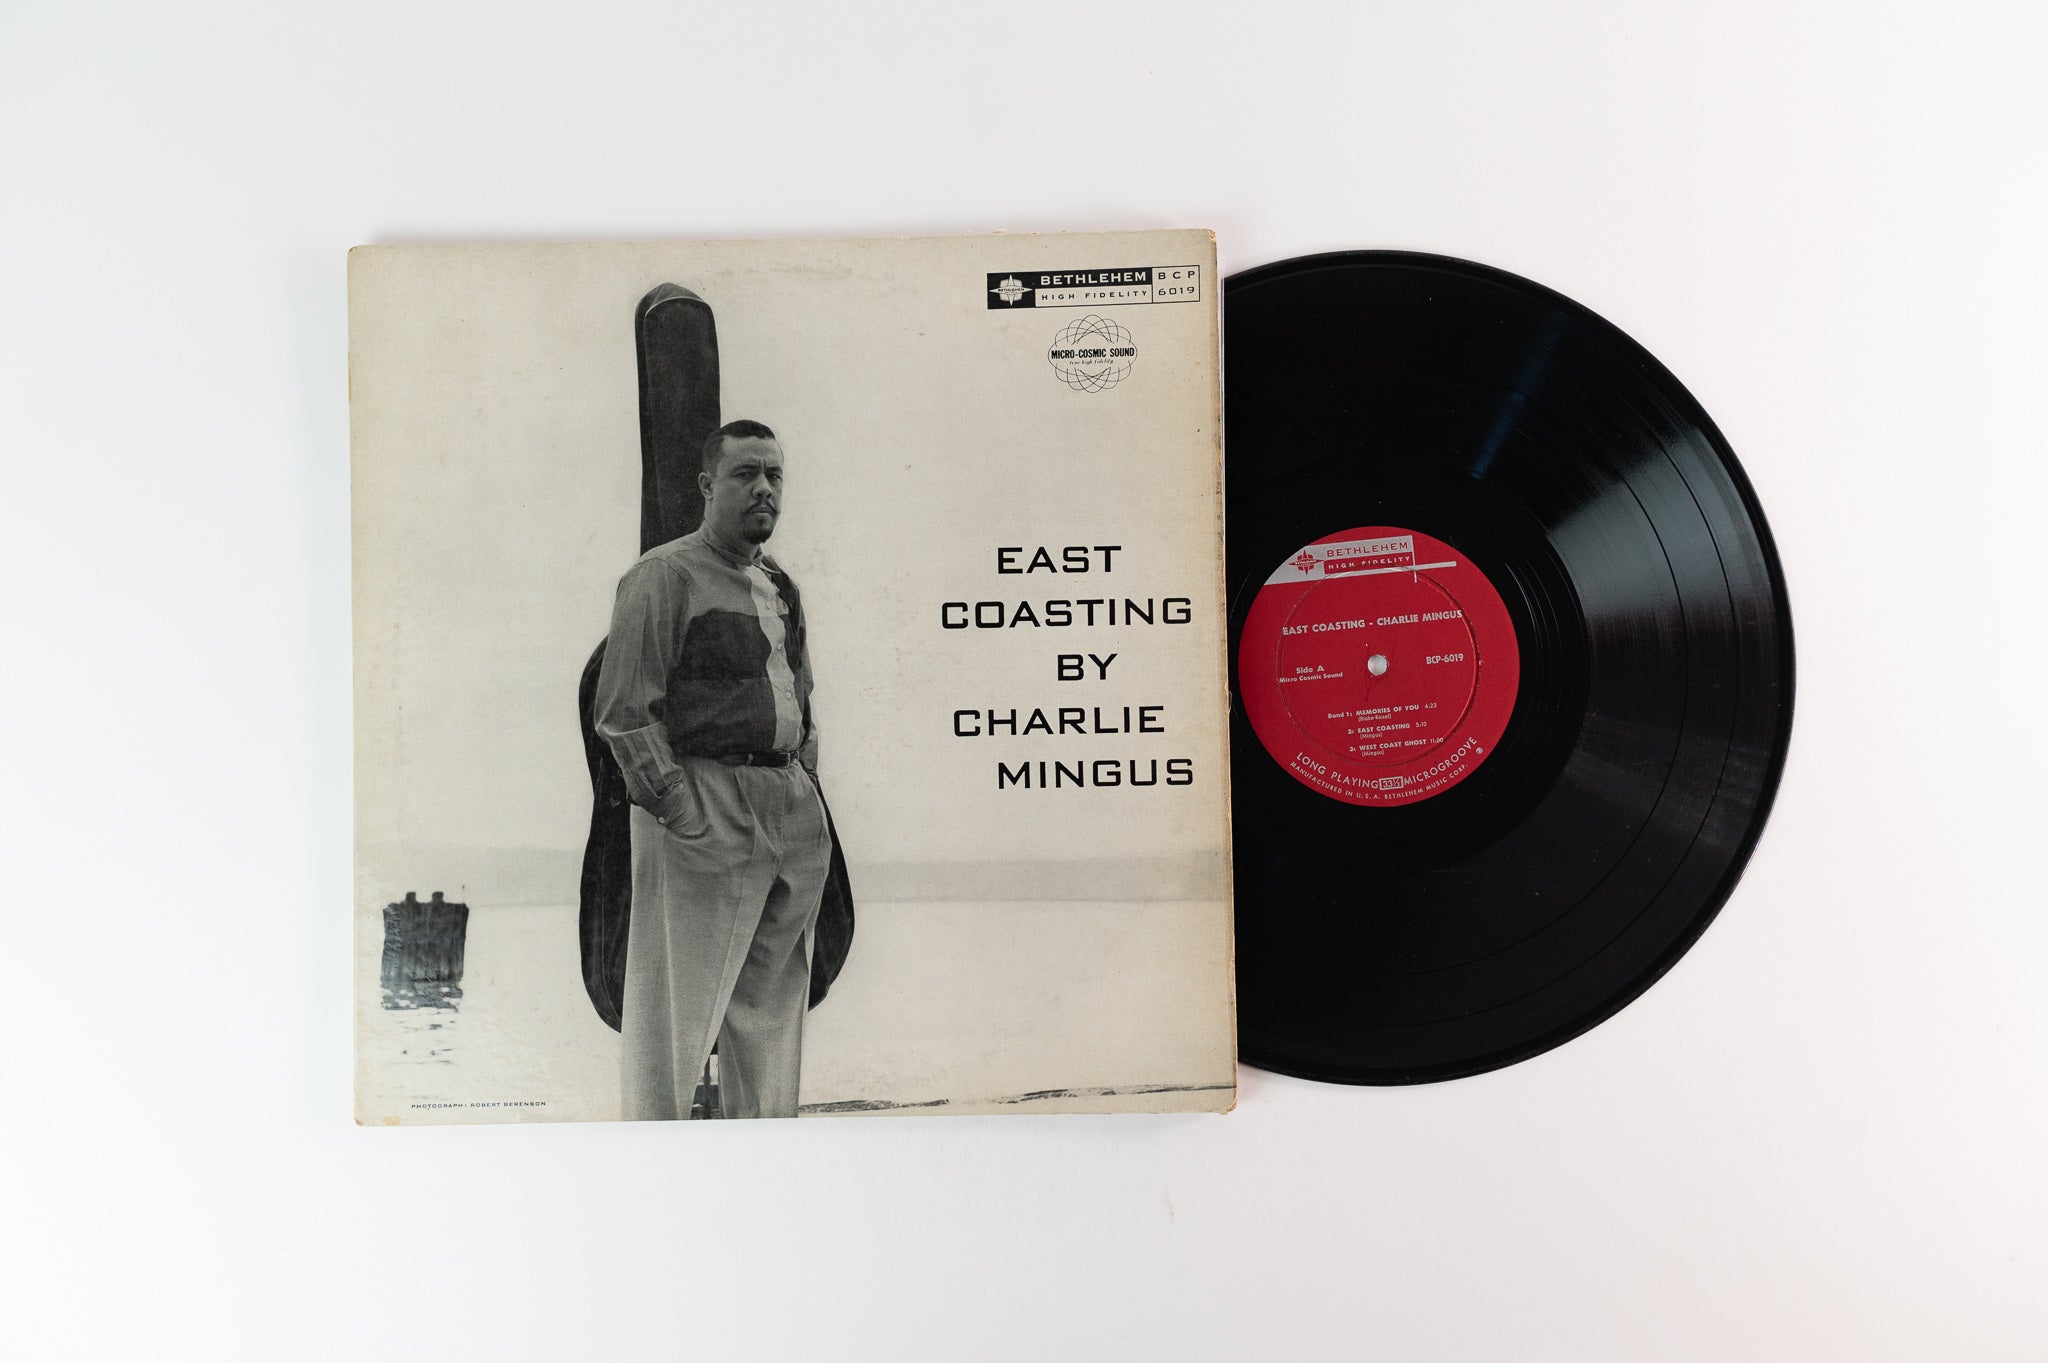 Charles Mingus - East Coasting on Bethlehem Mono Deep Groove